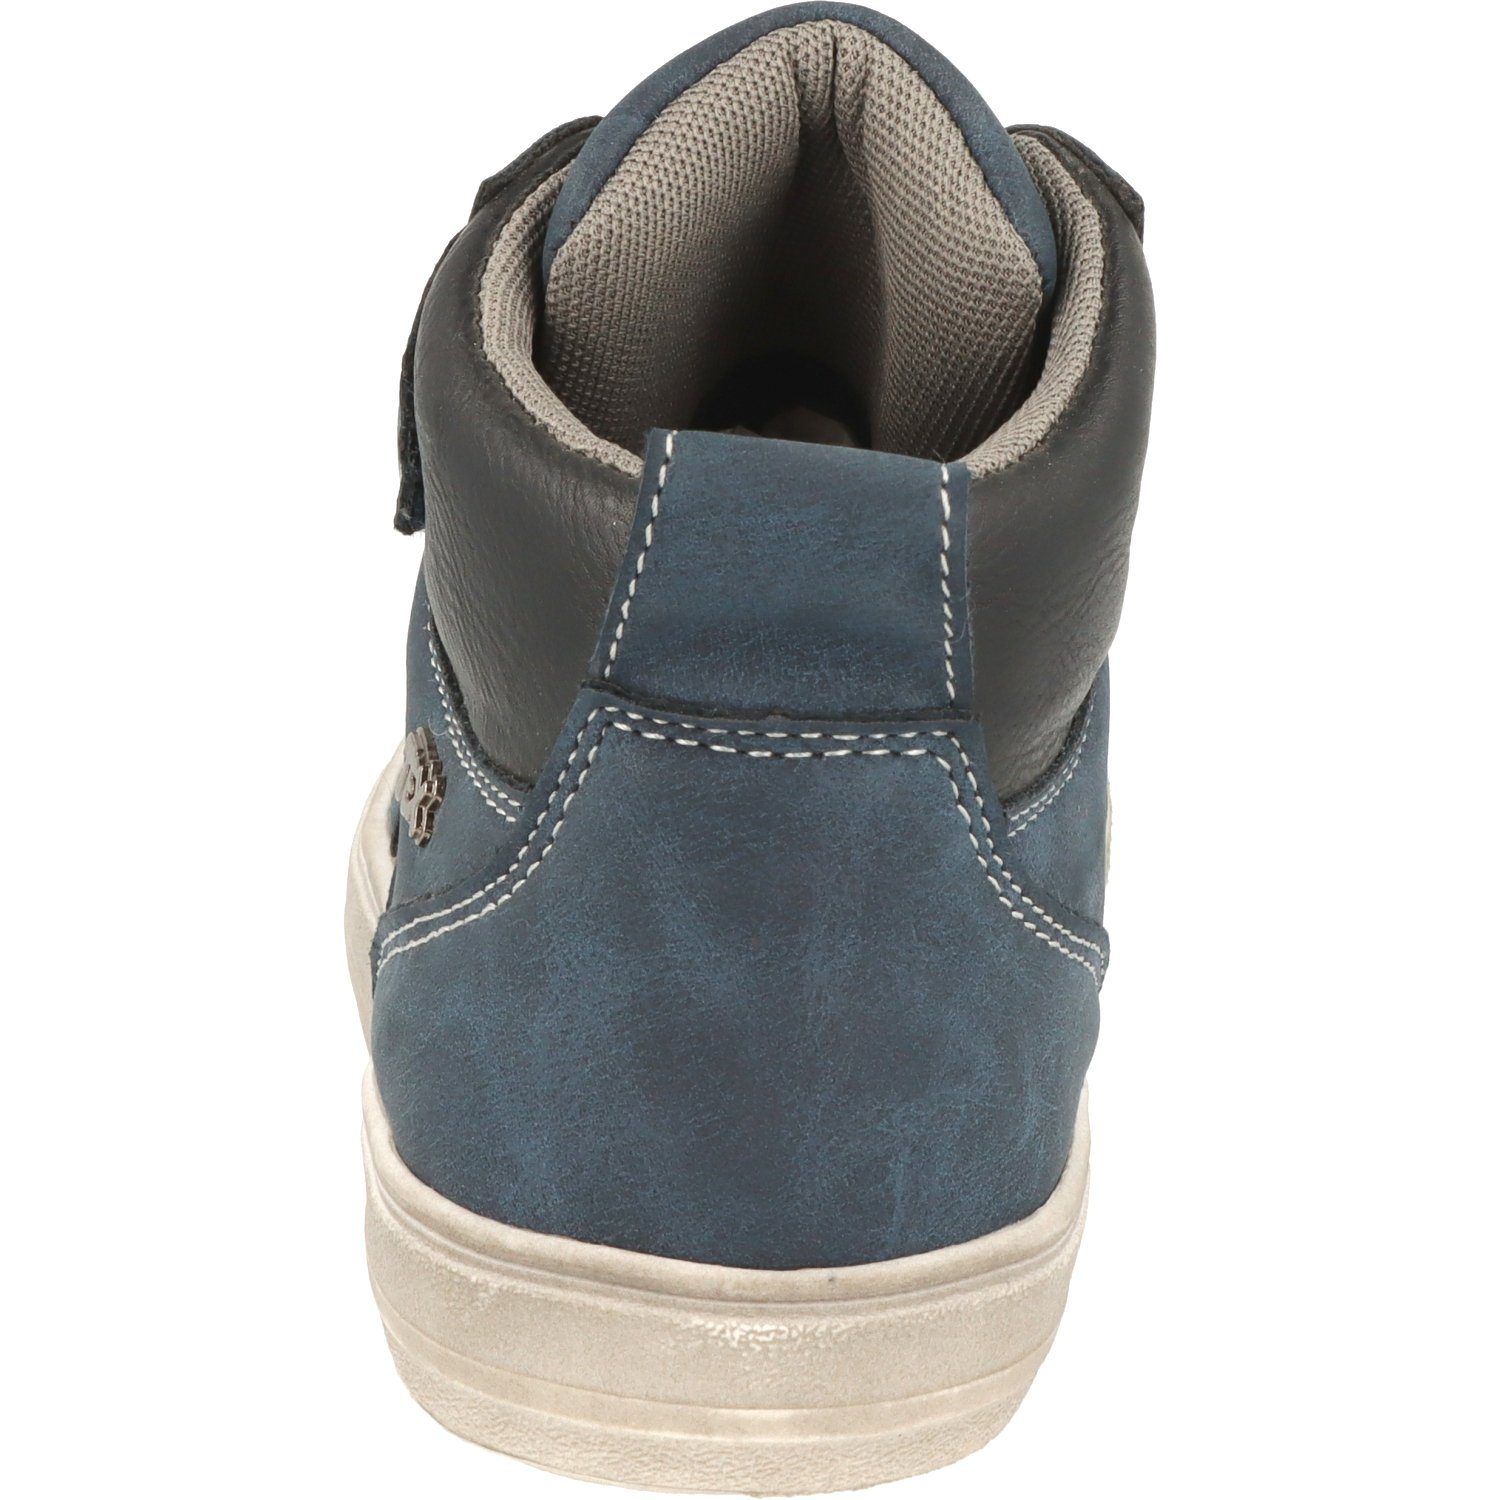 Sneaker Schnürschuhe Schuhe Navy Indigo 451-074 Jungen Hi-Top Wasserabweisend